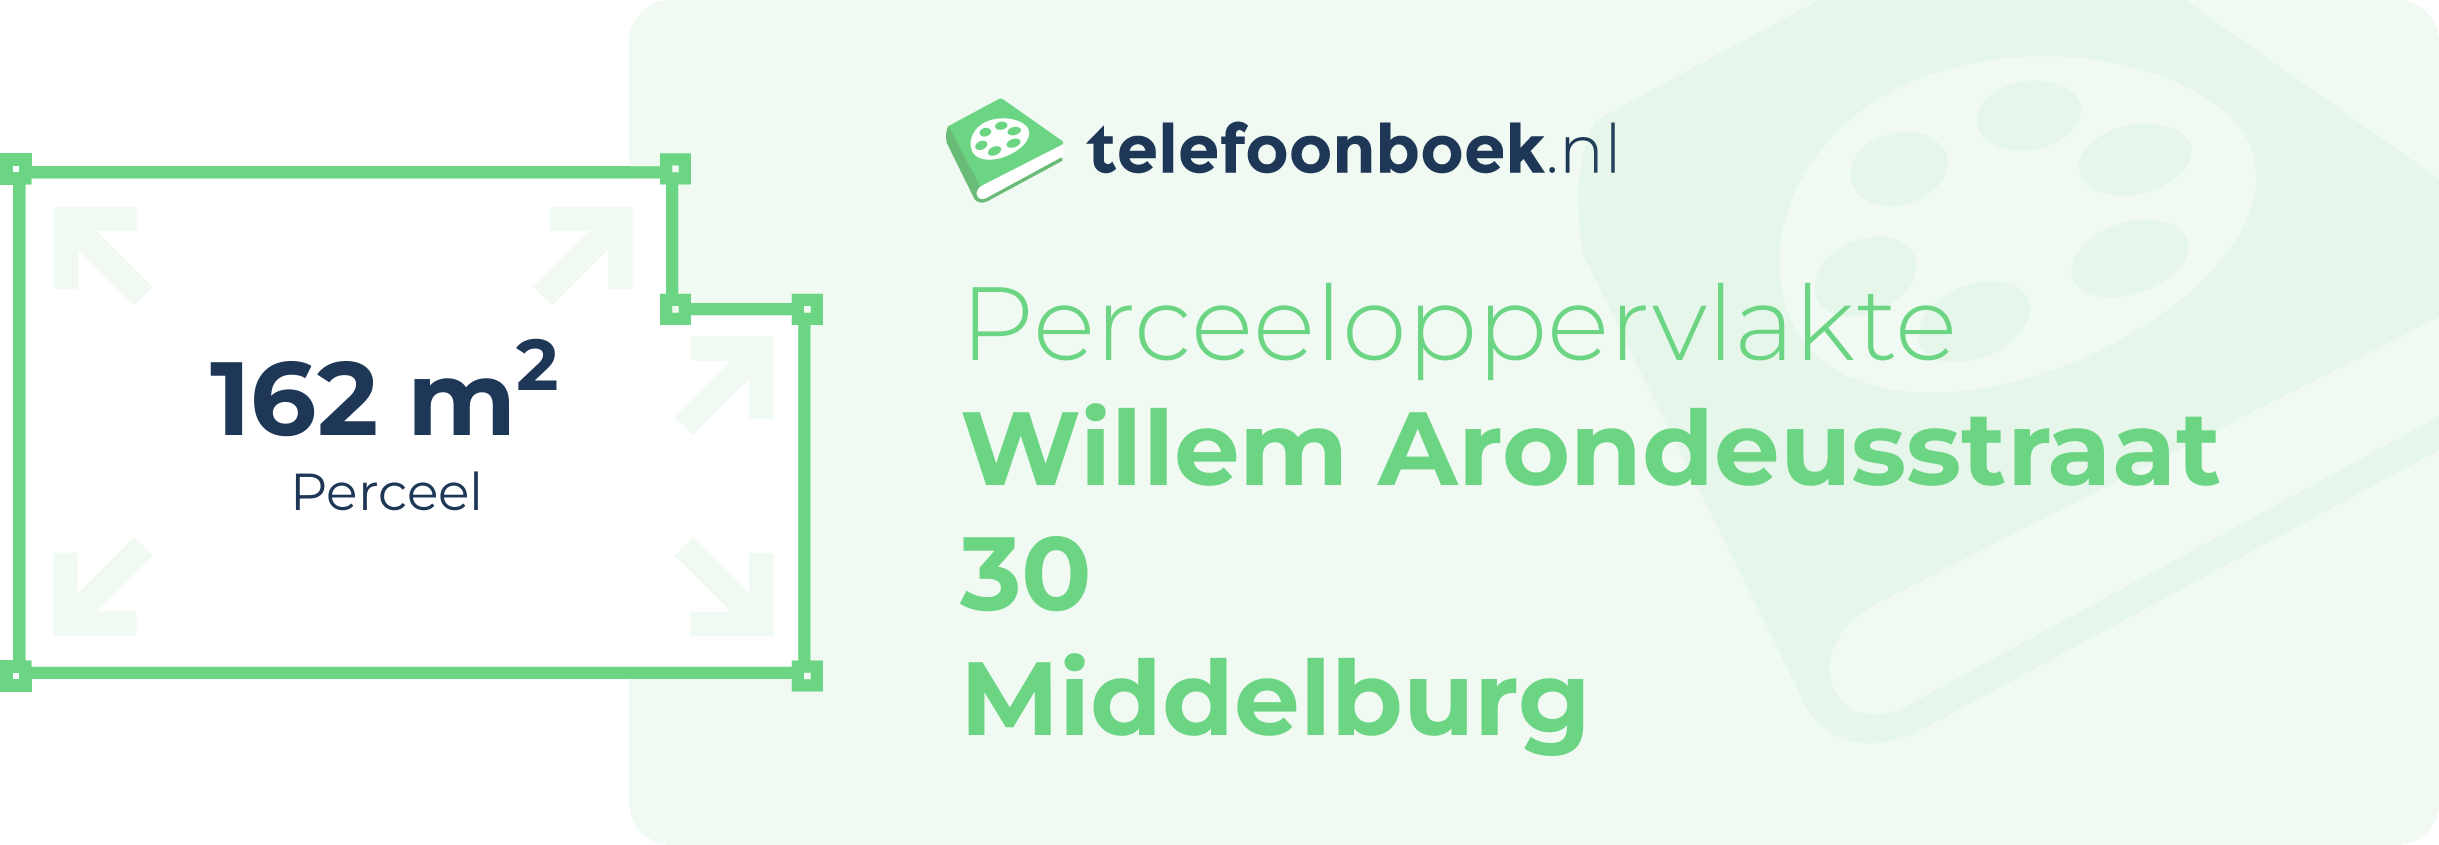 Perceeloppervlakte Willem Arondeusstraat 30 Middelburg